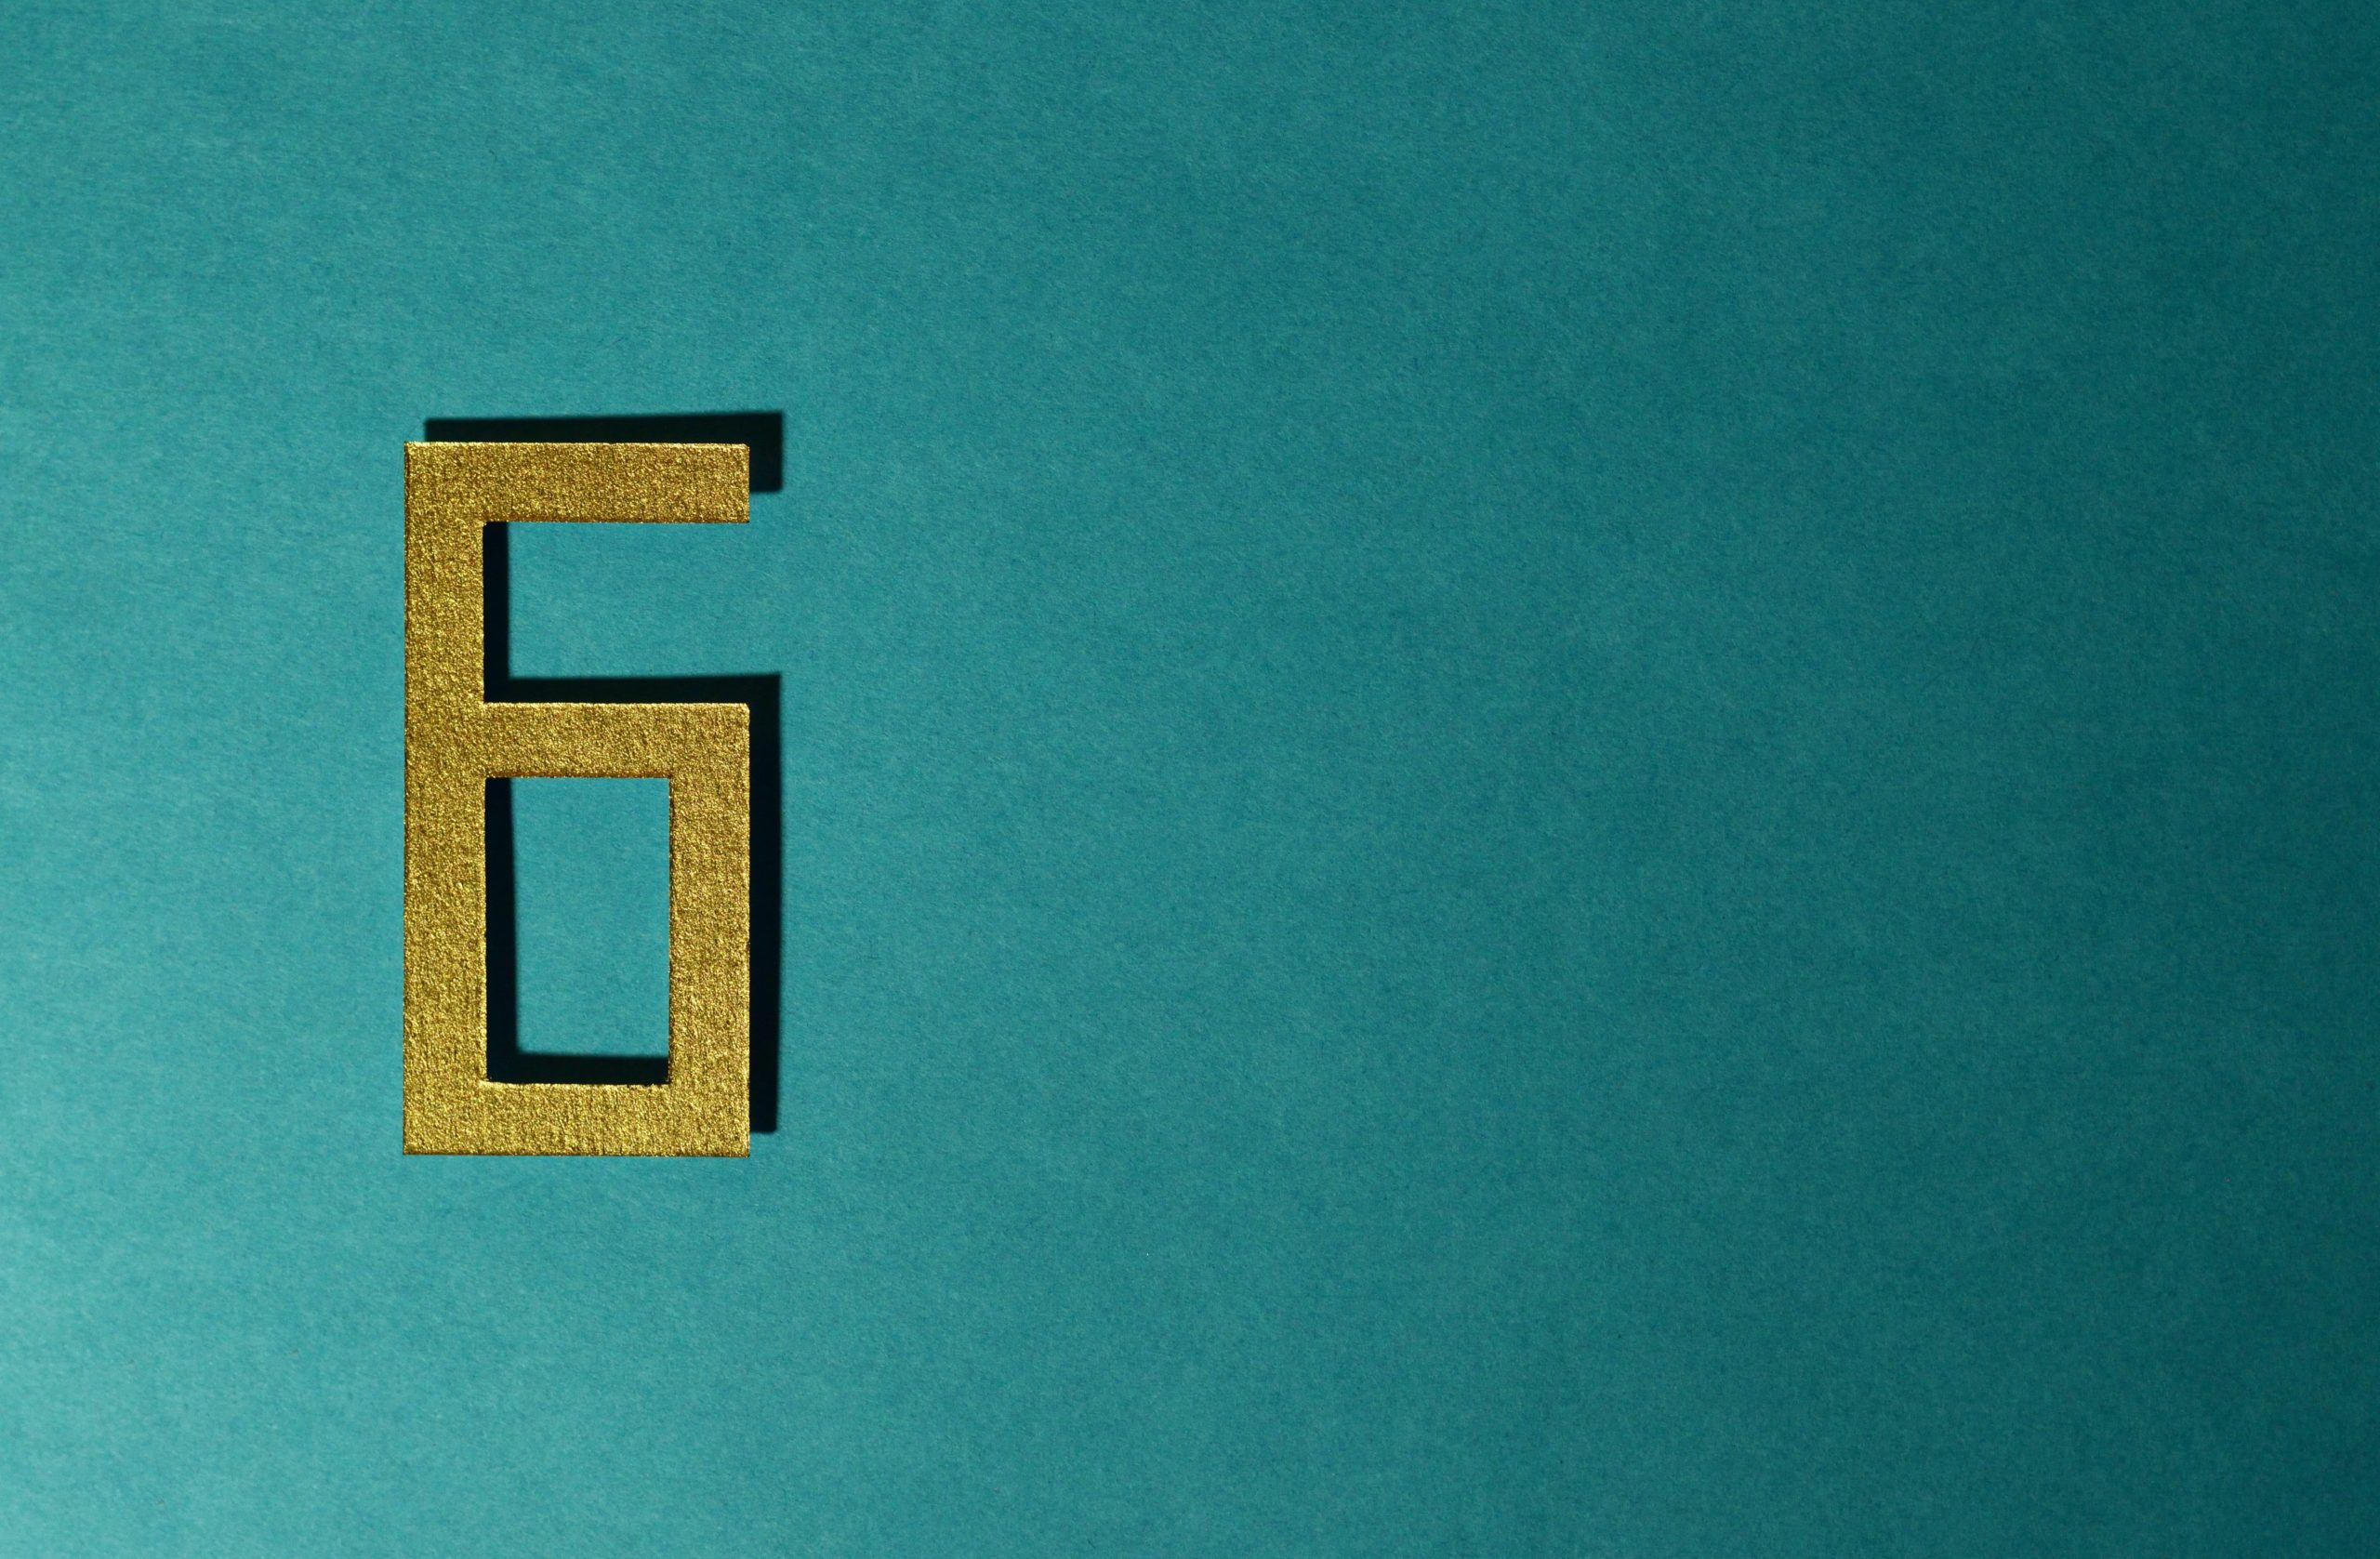 A golden rectangular number 6 lies on a teal surface.